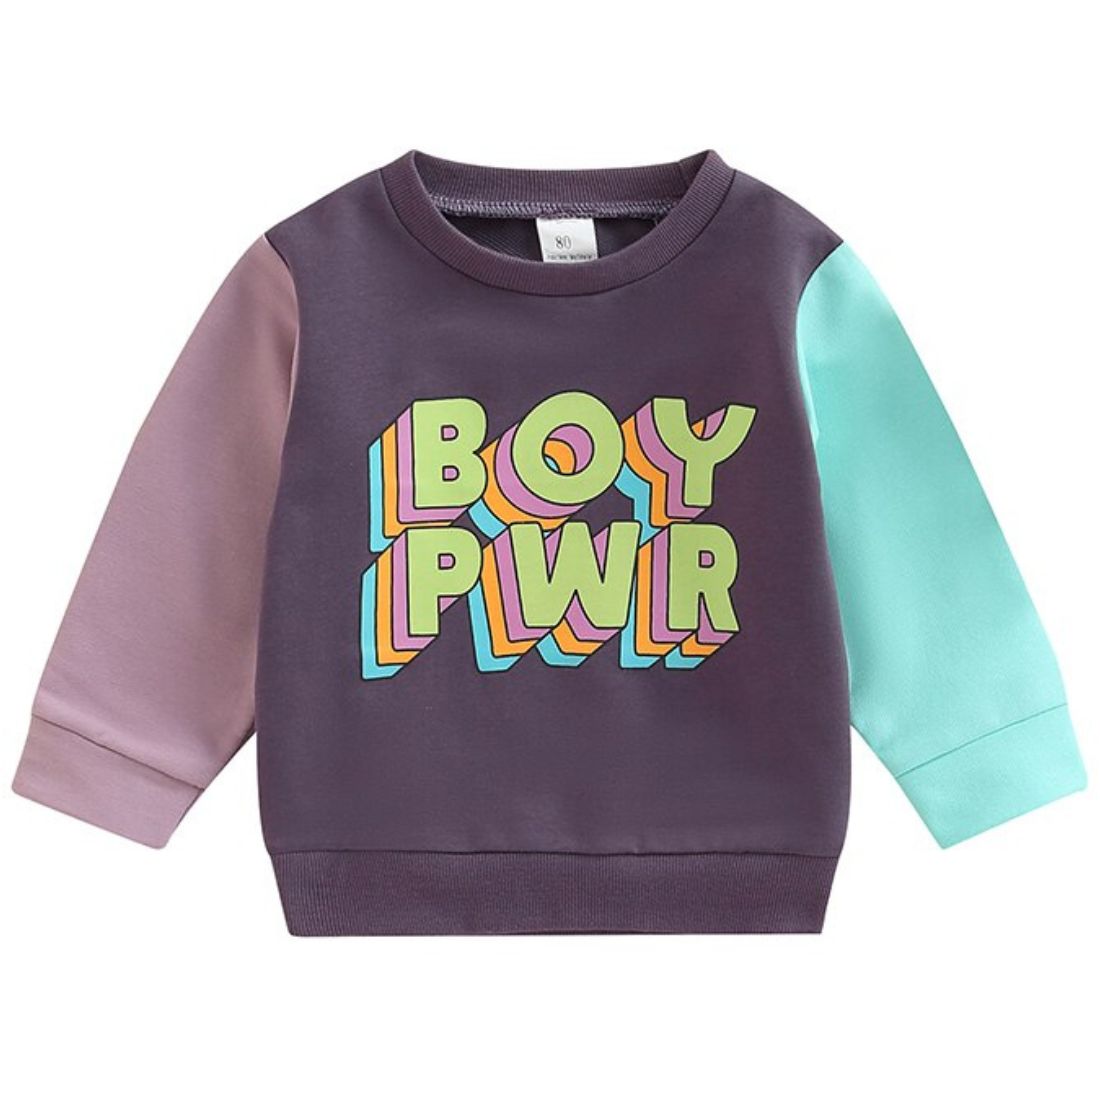 Boy Power Baby Boy Sweatshirt